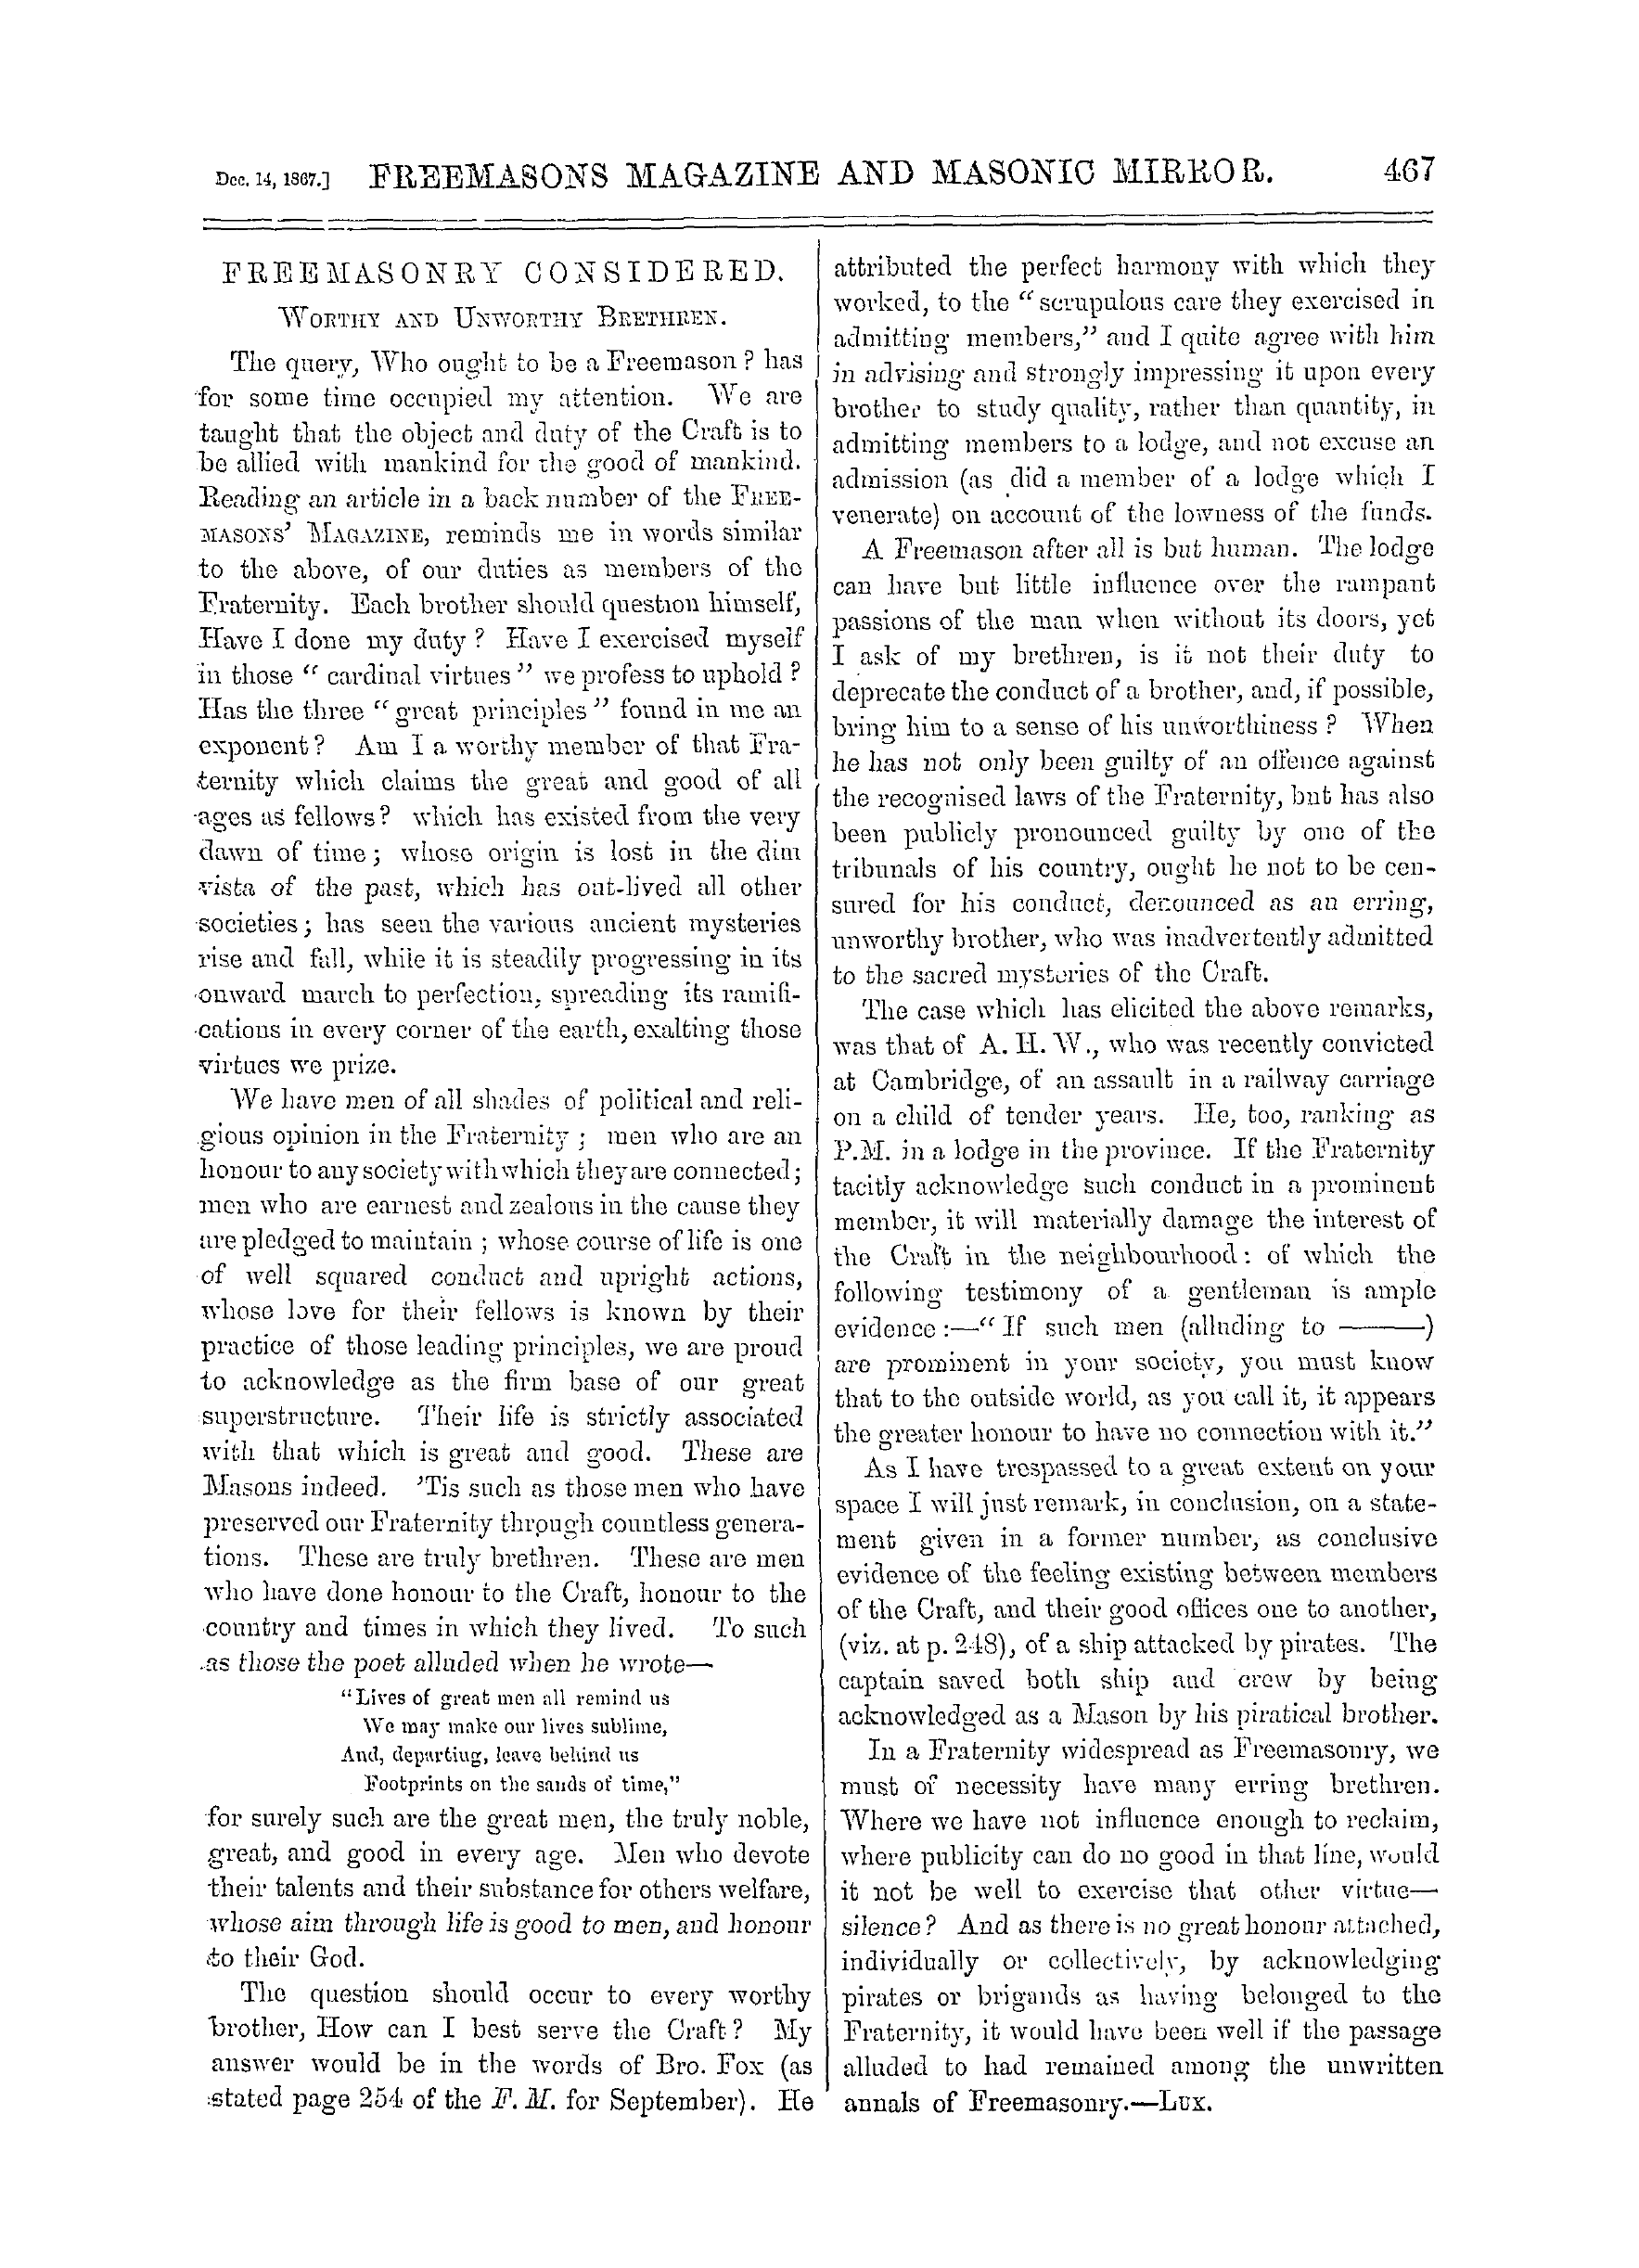 The Freemasons' Monthly Magazine: 1867-12-14: 7